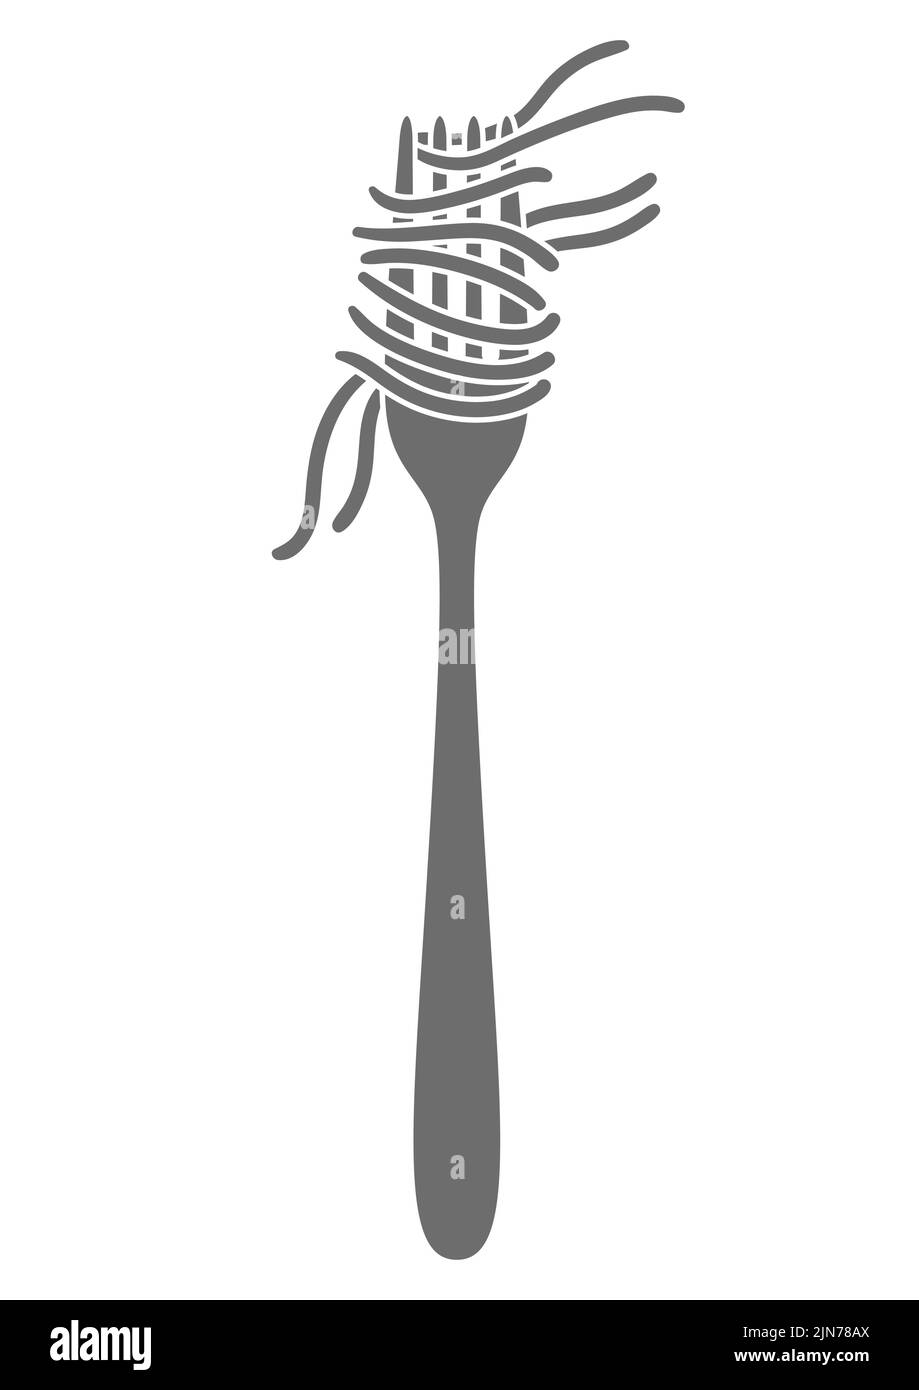 Illustrazione degli spaghetti di pasta italiana sulla forchetta. Immagine culinaria per menu di ristoranti. Illustrazione Vettoriale